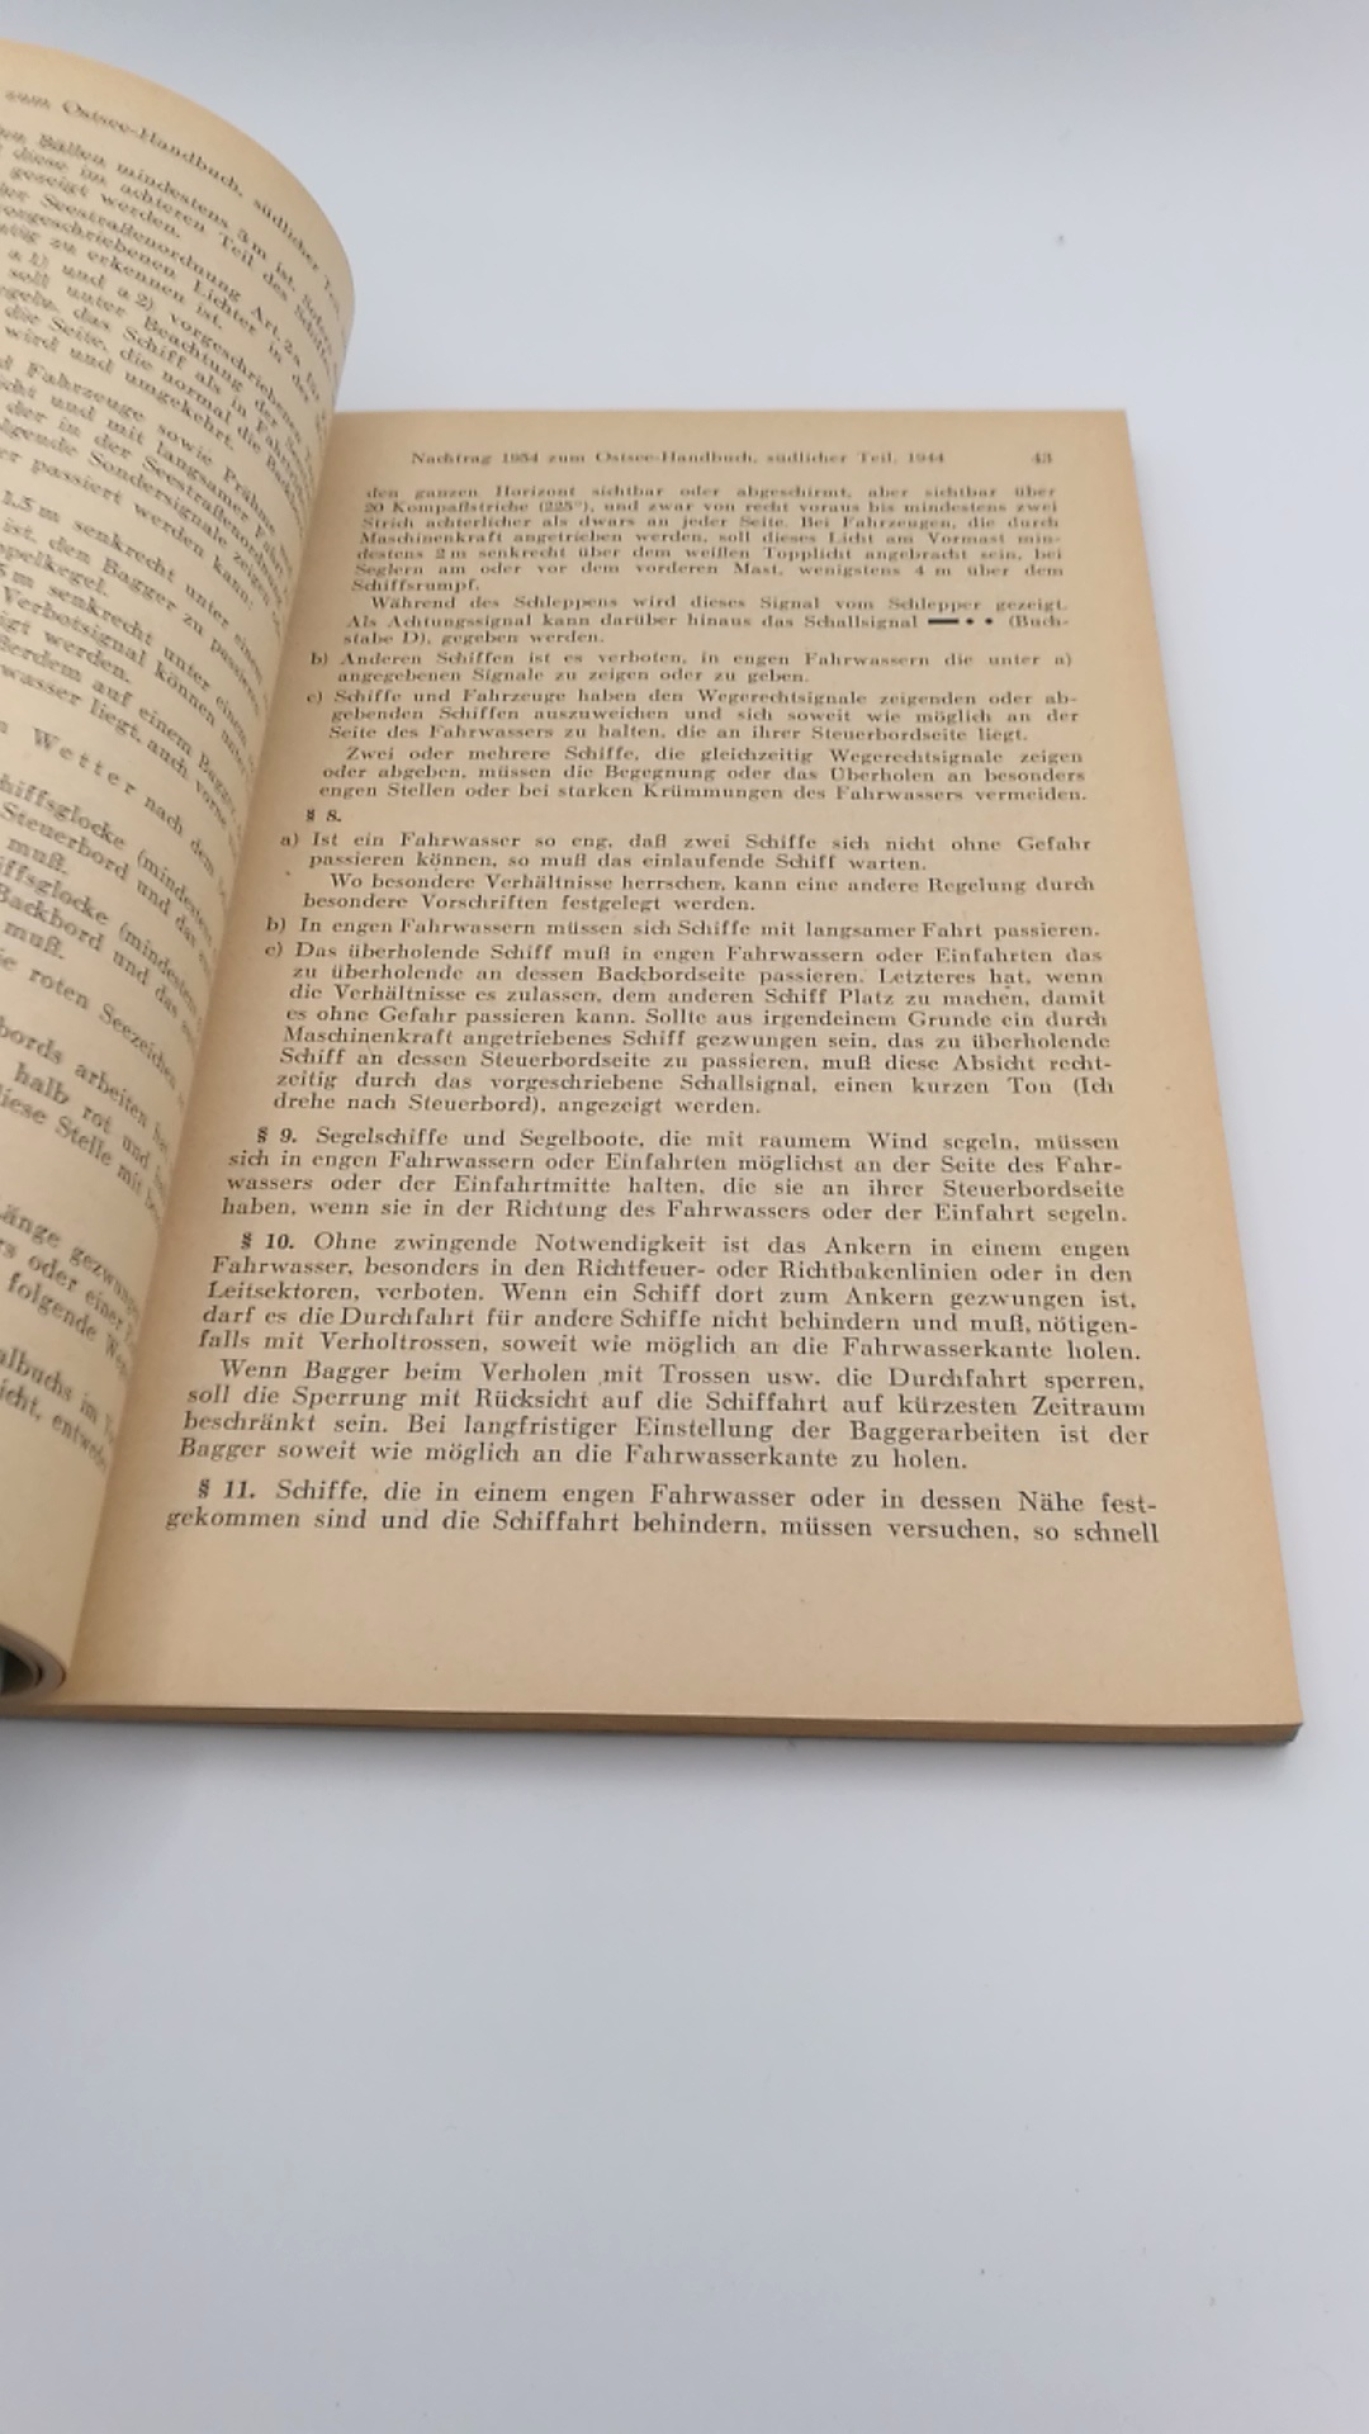 Deutsches Hydrographisches Institut Hamburg (Hrsg.): Nachtrag 1954 zum Ostsee-Handbuch Südlicher Teil 1944. Zu Nr. 2003 Abgeschlossen mit "Nachrichten für Seefahrt" Ausgabe 32 vom 14. August 1954